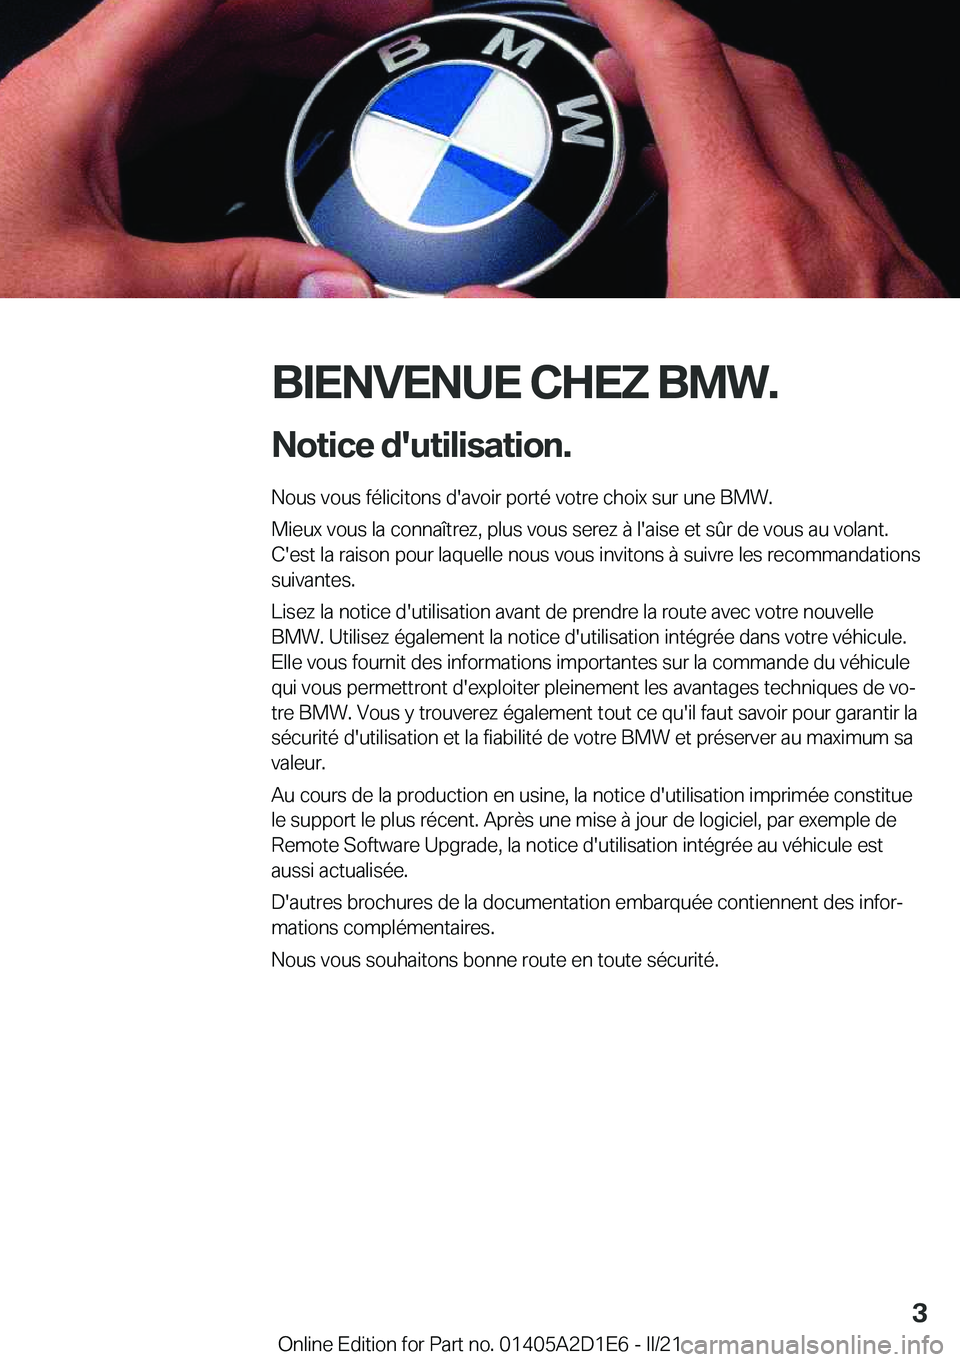 BMW X6 M 2021  Notices Demploi (in French) �B�I�E�N�V�E�N�U�E��C�H�E�Z��B�M�W�.�N�o�t�i�c�e��d�'�u�t�i�l�i�s�a�t�i�o�n�.
�N�o�u�s��v�o�u�s��f�é�l�i�c�i�t�o�n�s��d�'�a�v�o�i�r��p�o�r�t�é��v�o�t�r�e��c�h�o�i�x��s�u�r��u�n�e�